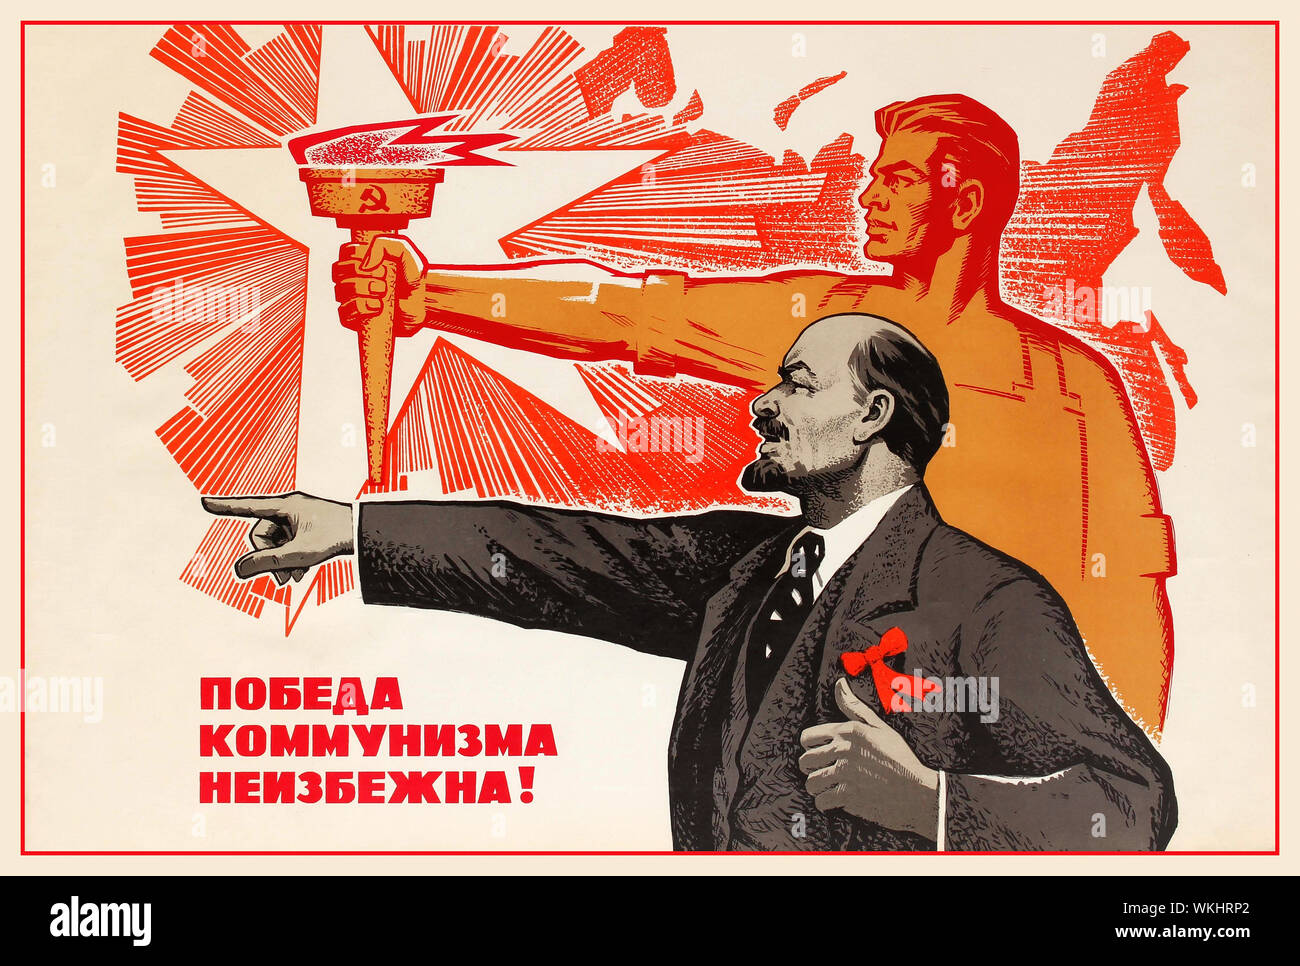 Vintage anni sessanta propaganda sovietica poster 'La vittoria del comunismo è inevitabile' dotate di illustrazione di Lenin e di puntamento di un operaio sovietico tenendo una torcia ardente del comunismo dietro di lui. La Russia sovietica, 1969, designer: V. Konuhov Foto Stock